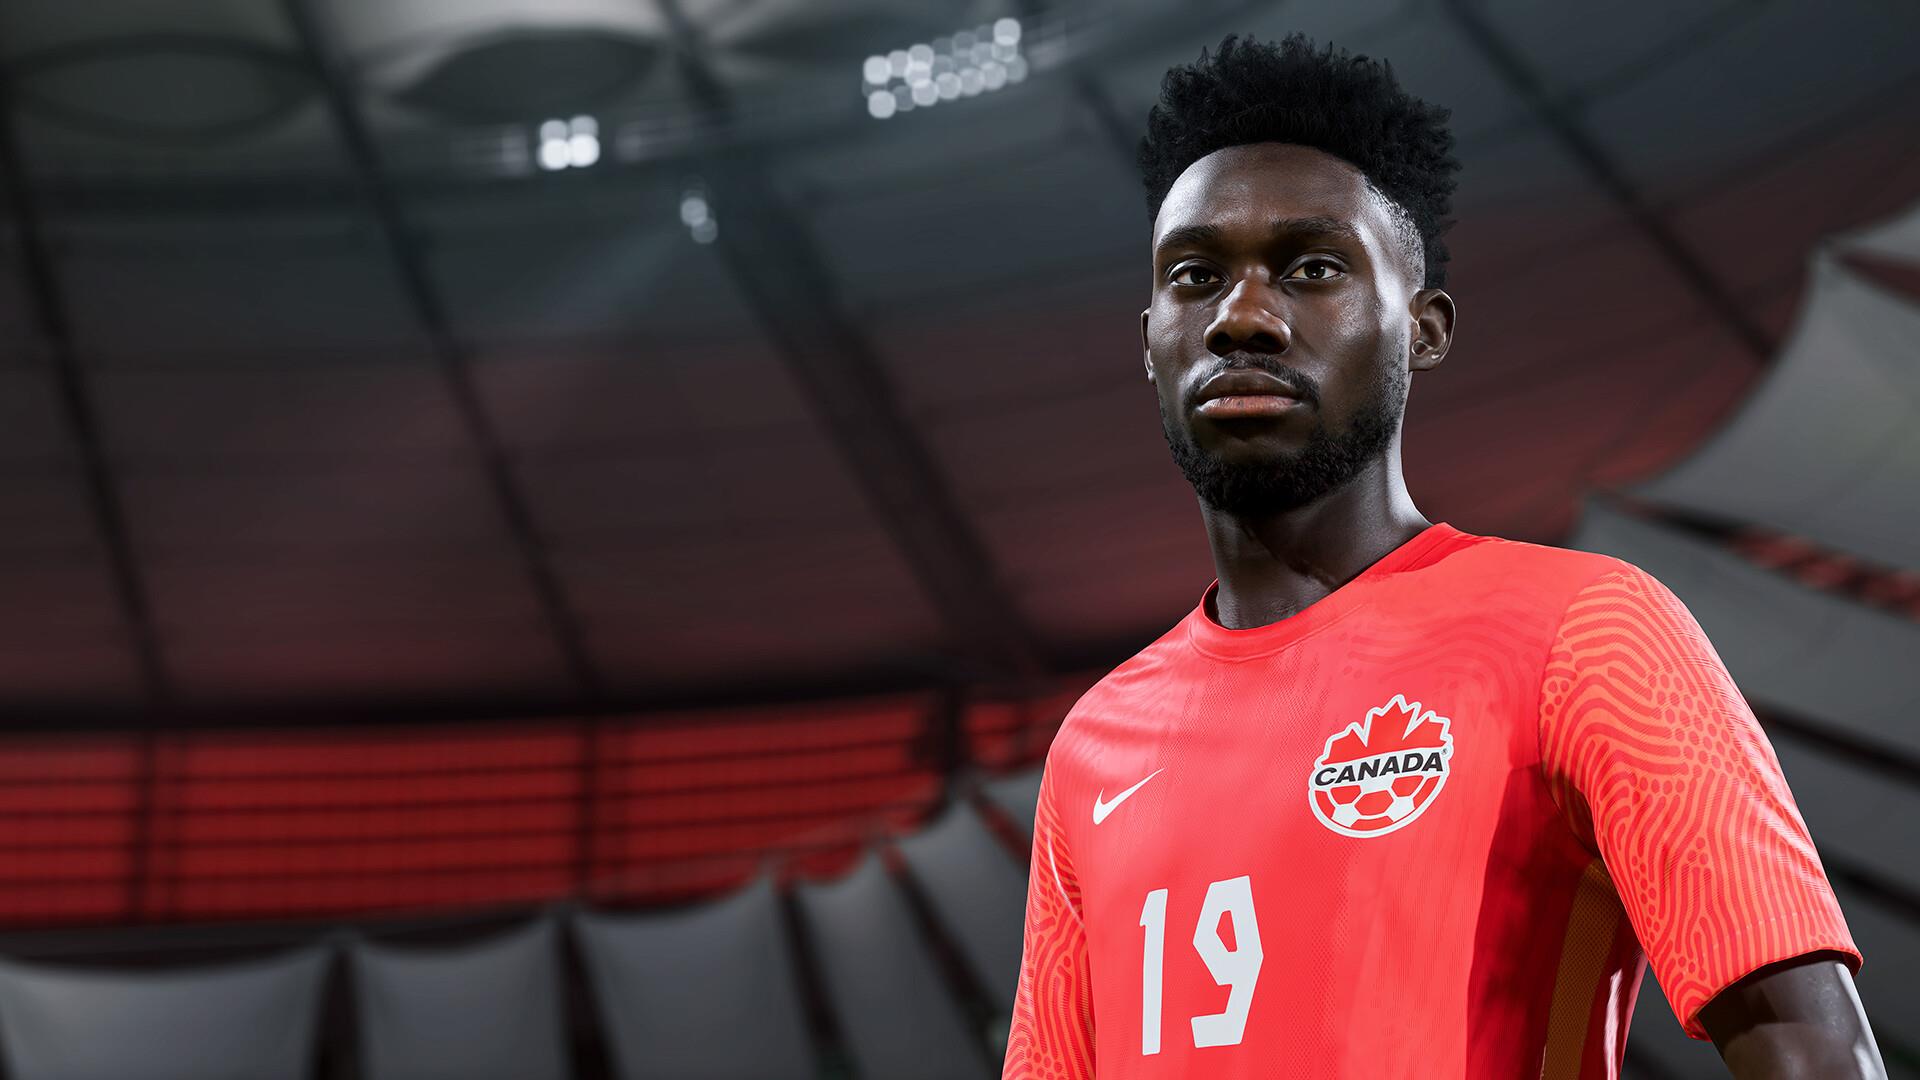 REVIEW: FIFA 23 se permite ousar e é fim elegante de uma era